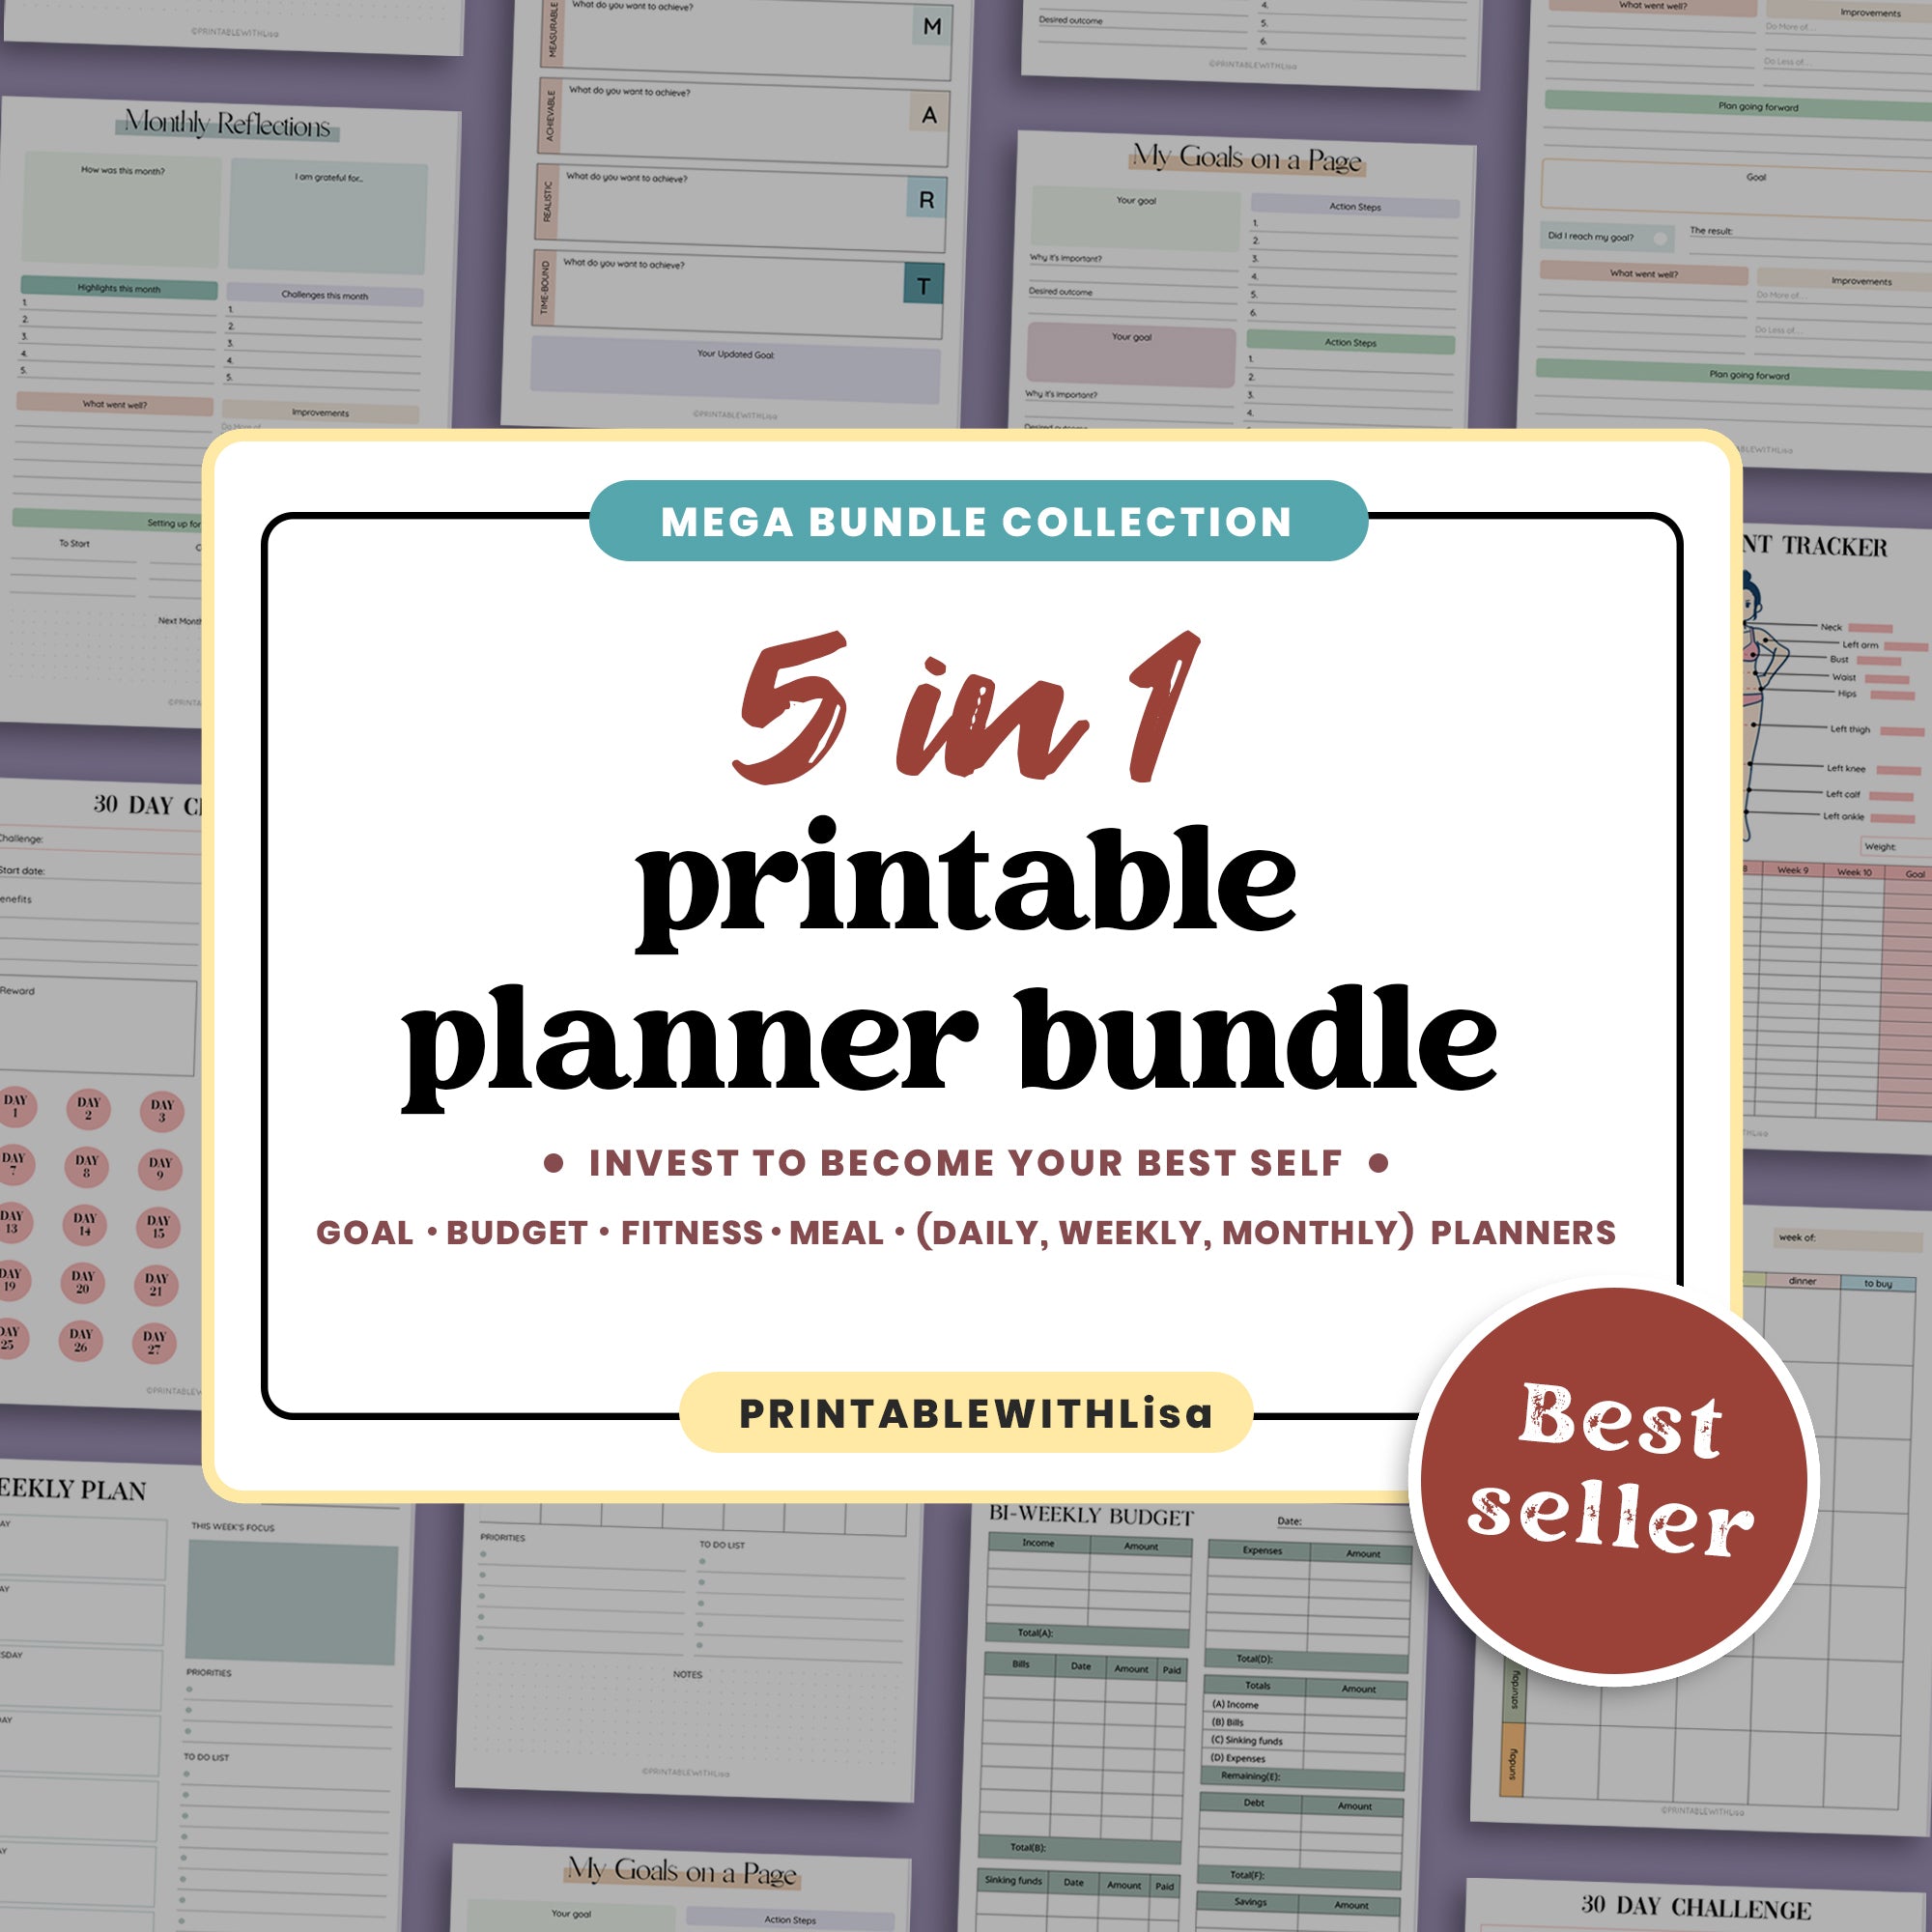 5 IN 1 Printable Planner Bundle - PRINTABLEWITHLisa